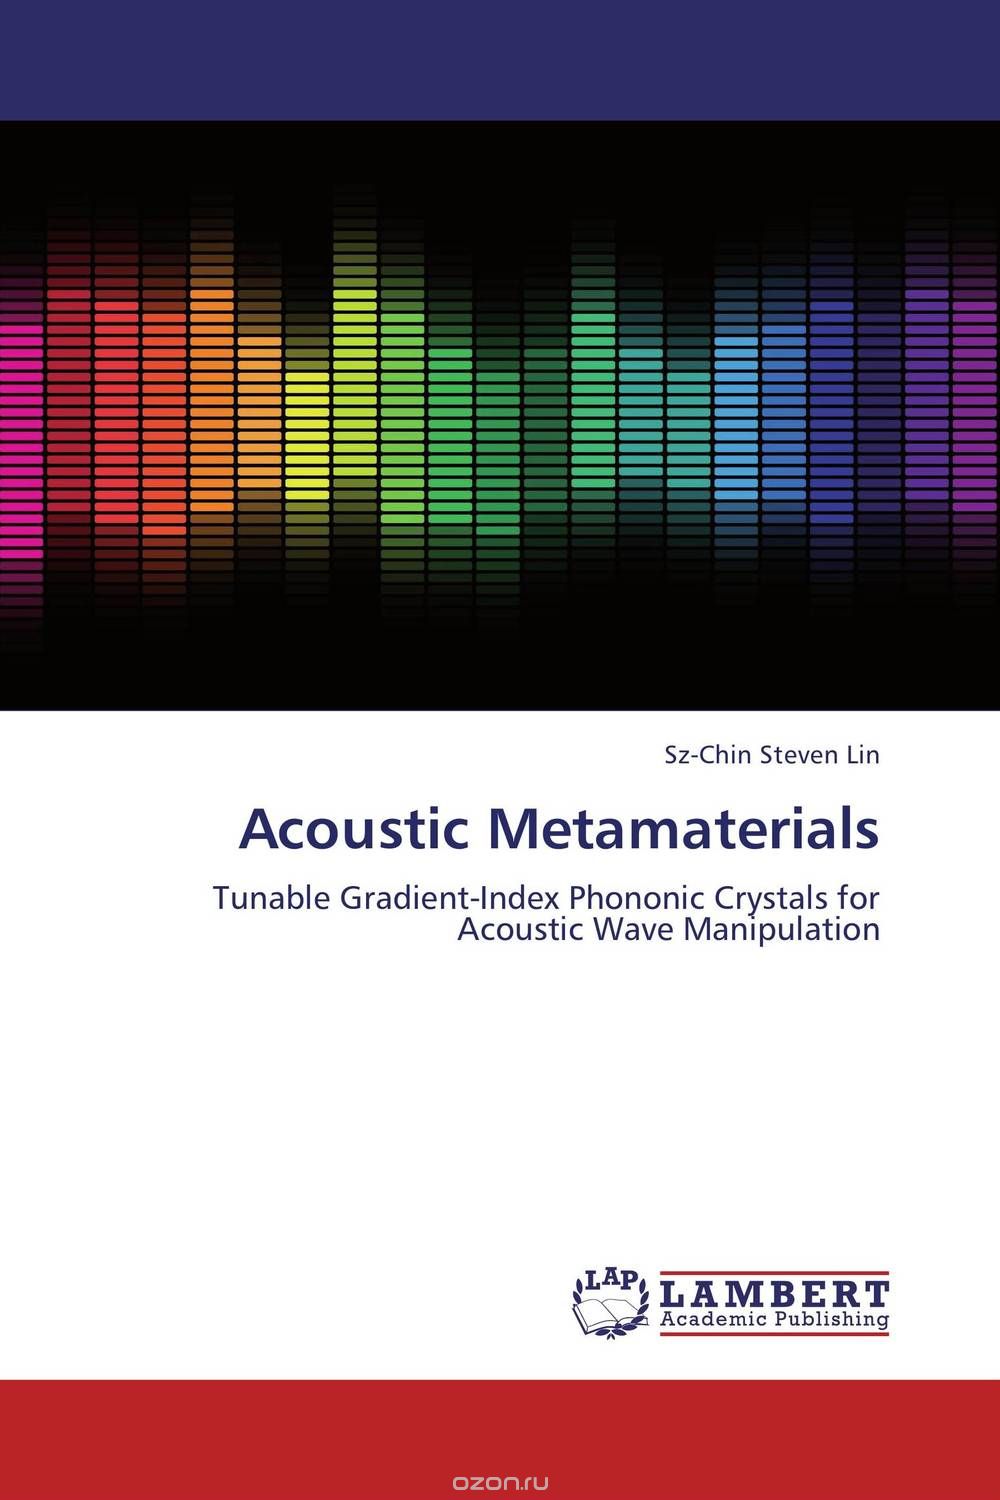 Скачать книгу "Acoustic Metamaterials"